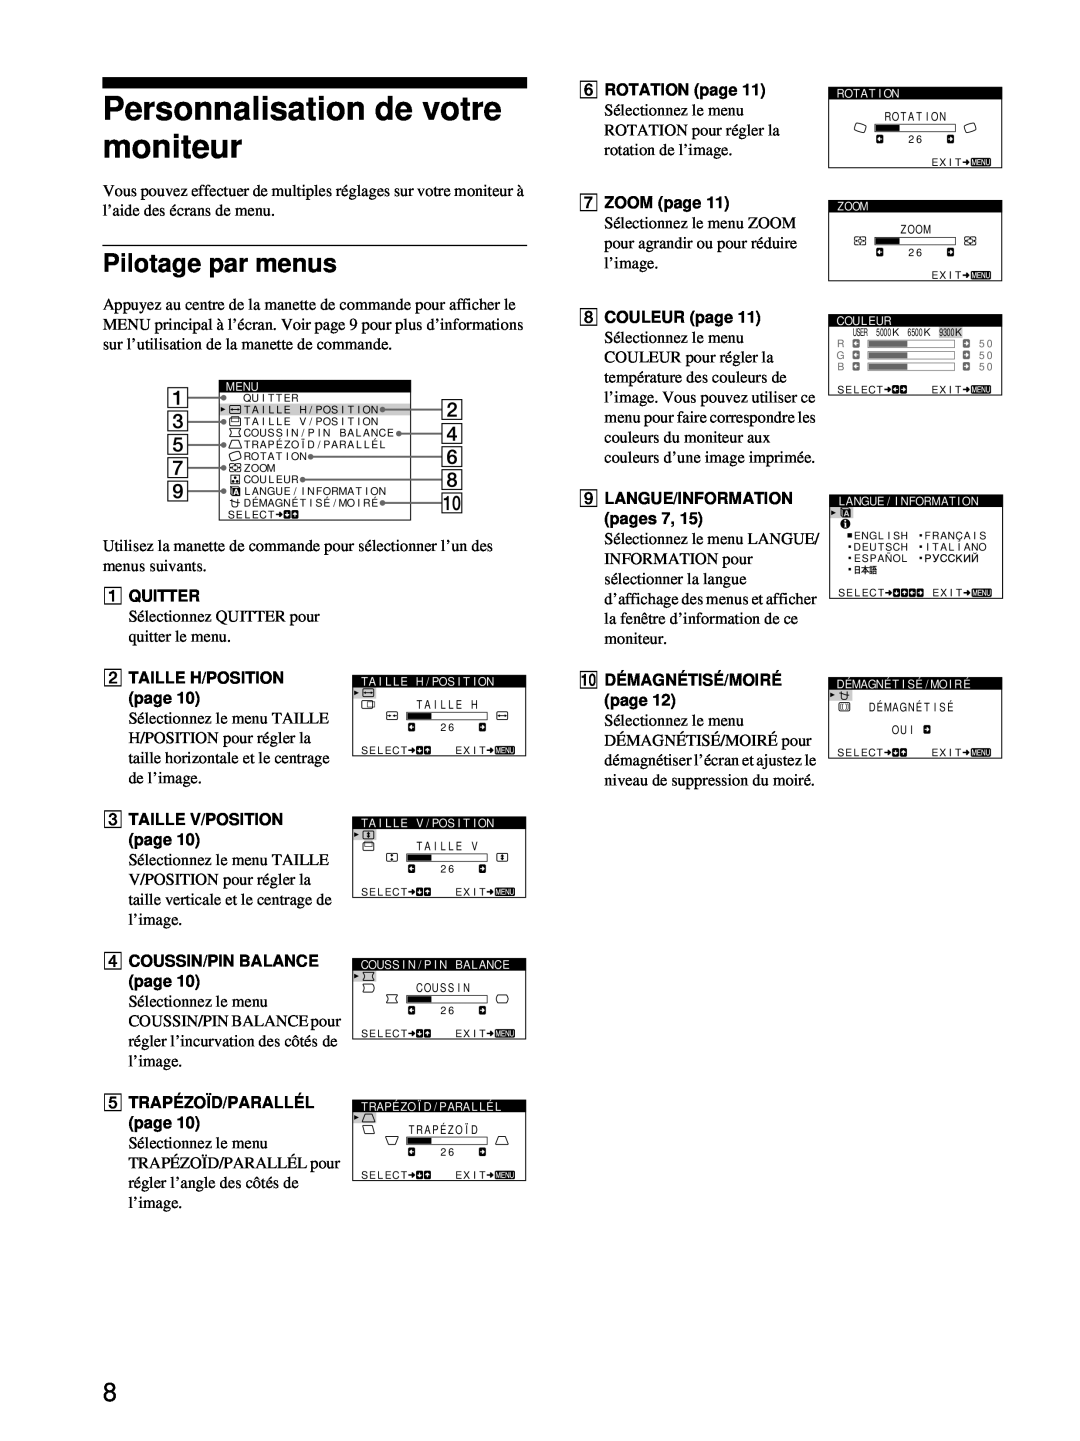 Sony CPD-E100 manual Personnalisation de votre moniteur, Pilotage par menus 